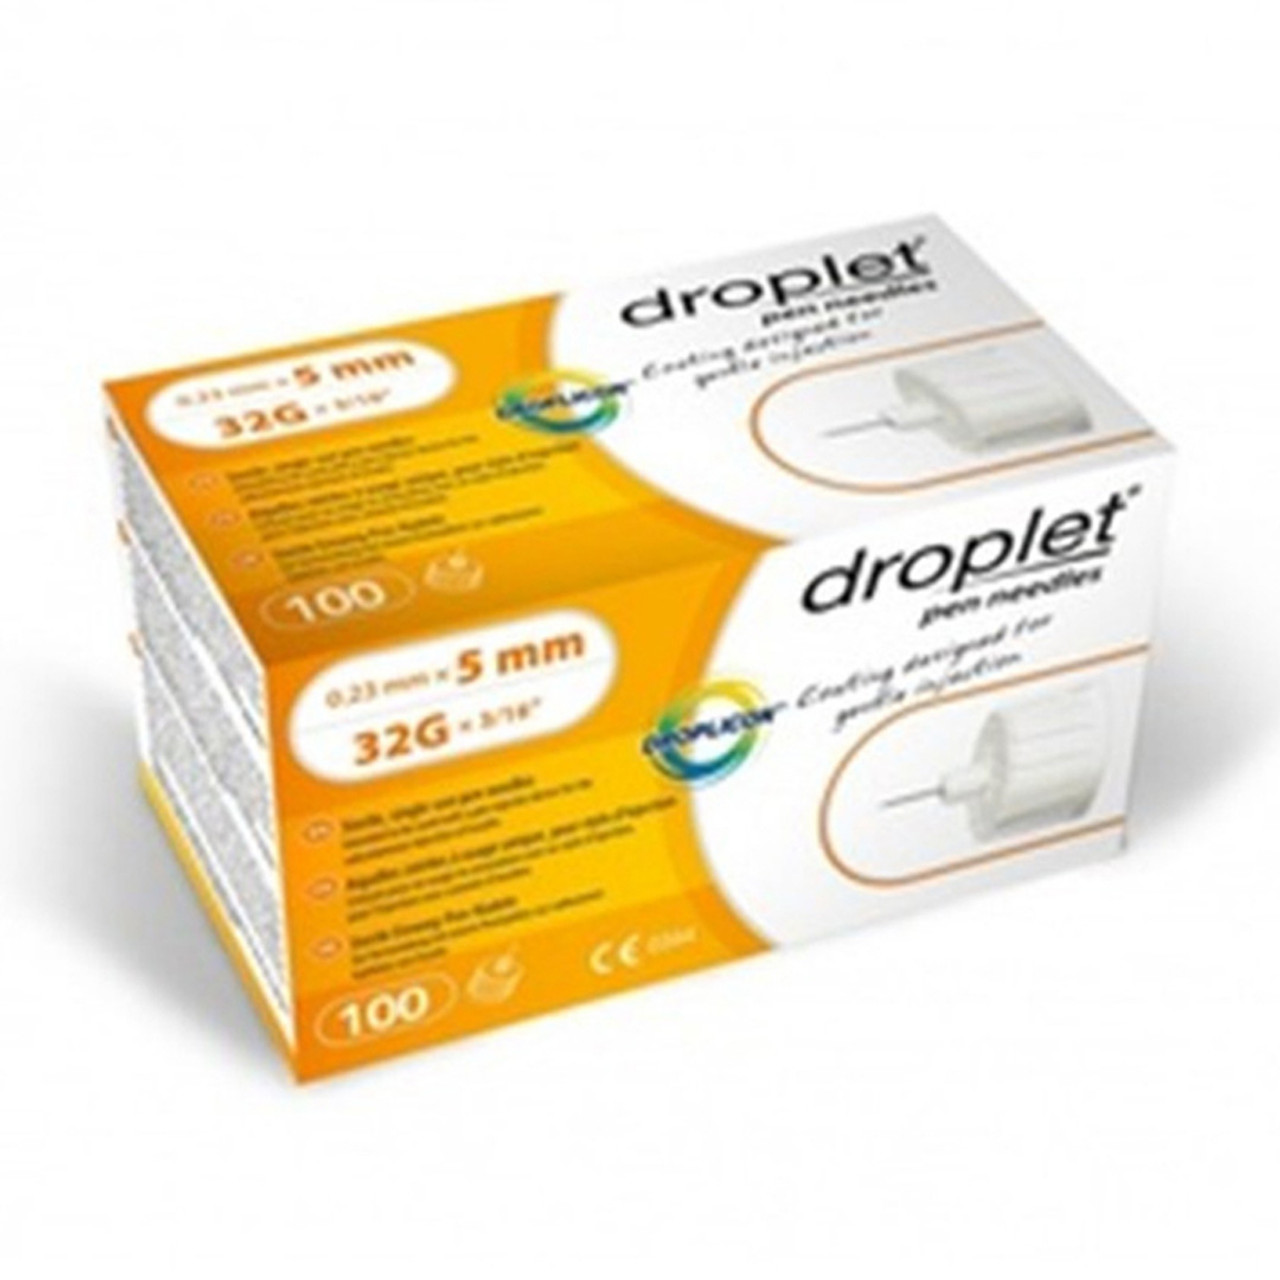 DROPLET PEN NEEDLES 31G 5MM – 100 pcs + DROPLET PEN NEEDLES 32G 6MM – 100  pcs ( free ) - Qasr Elteb